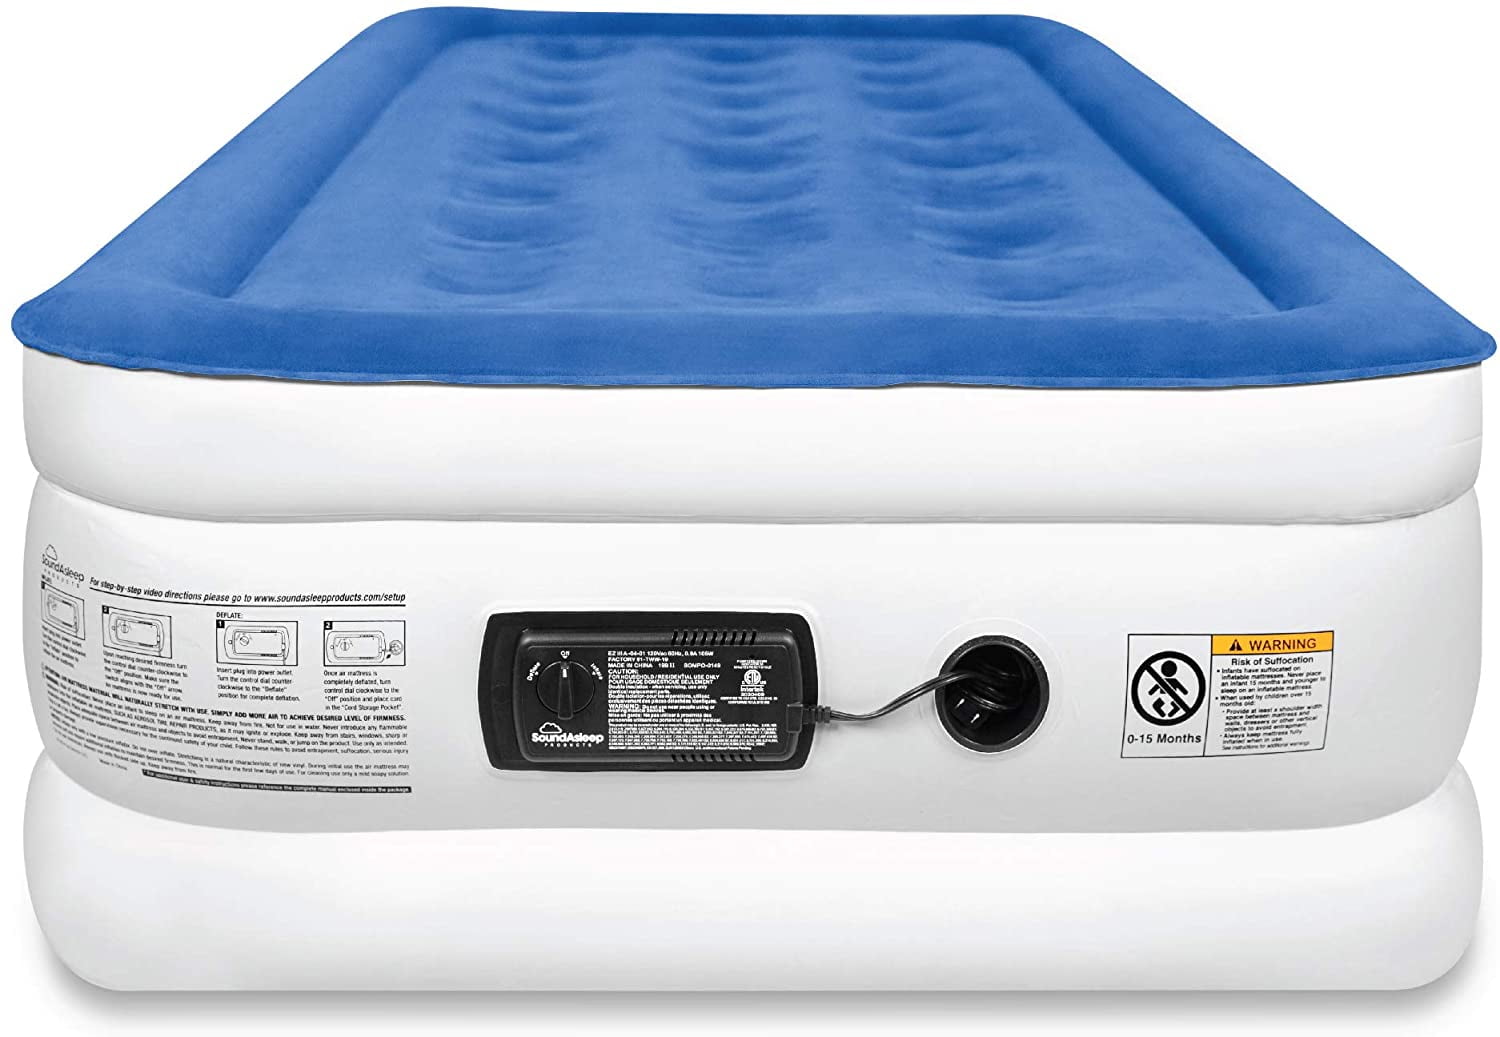 soundasleep camping series air mattress queen size